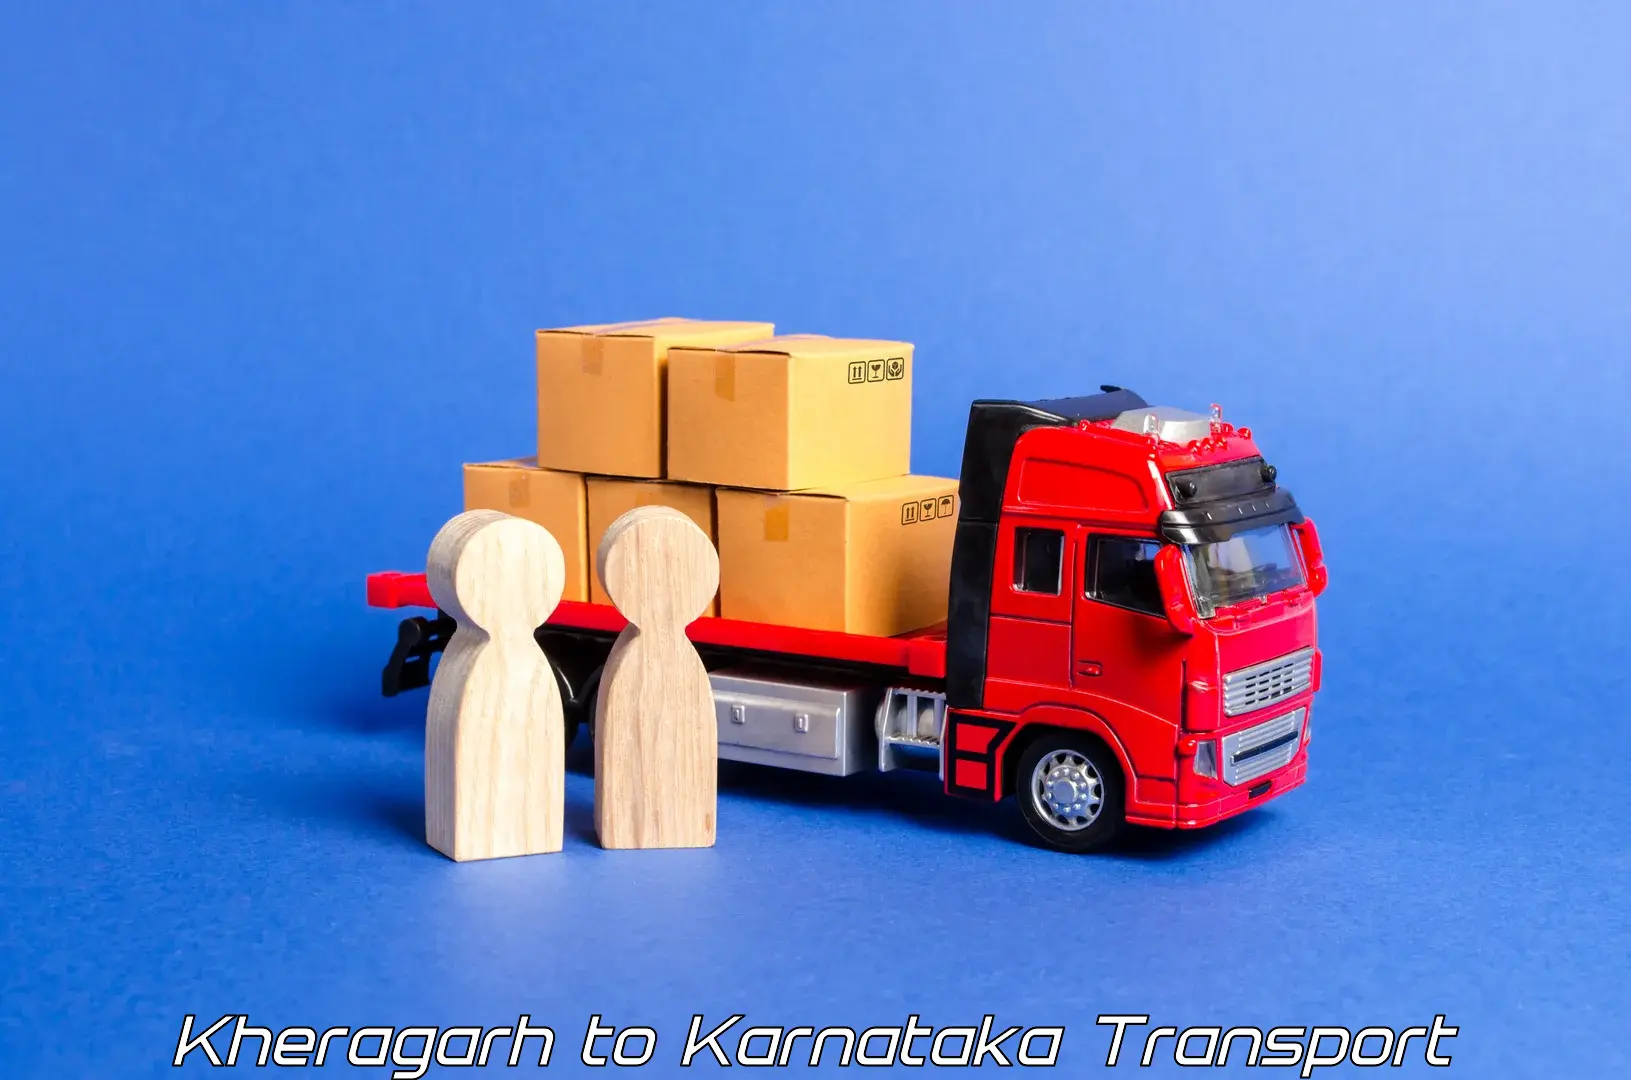 Pick up transport service Kheragarh to Nelamangala